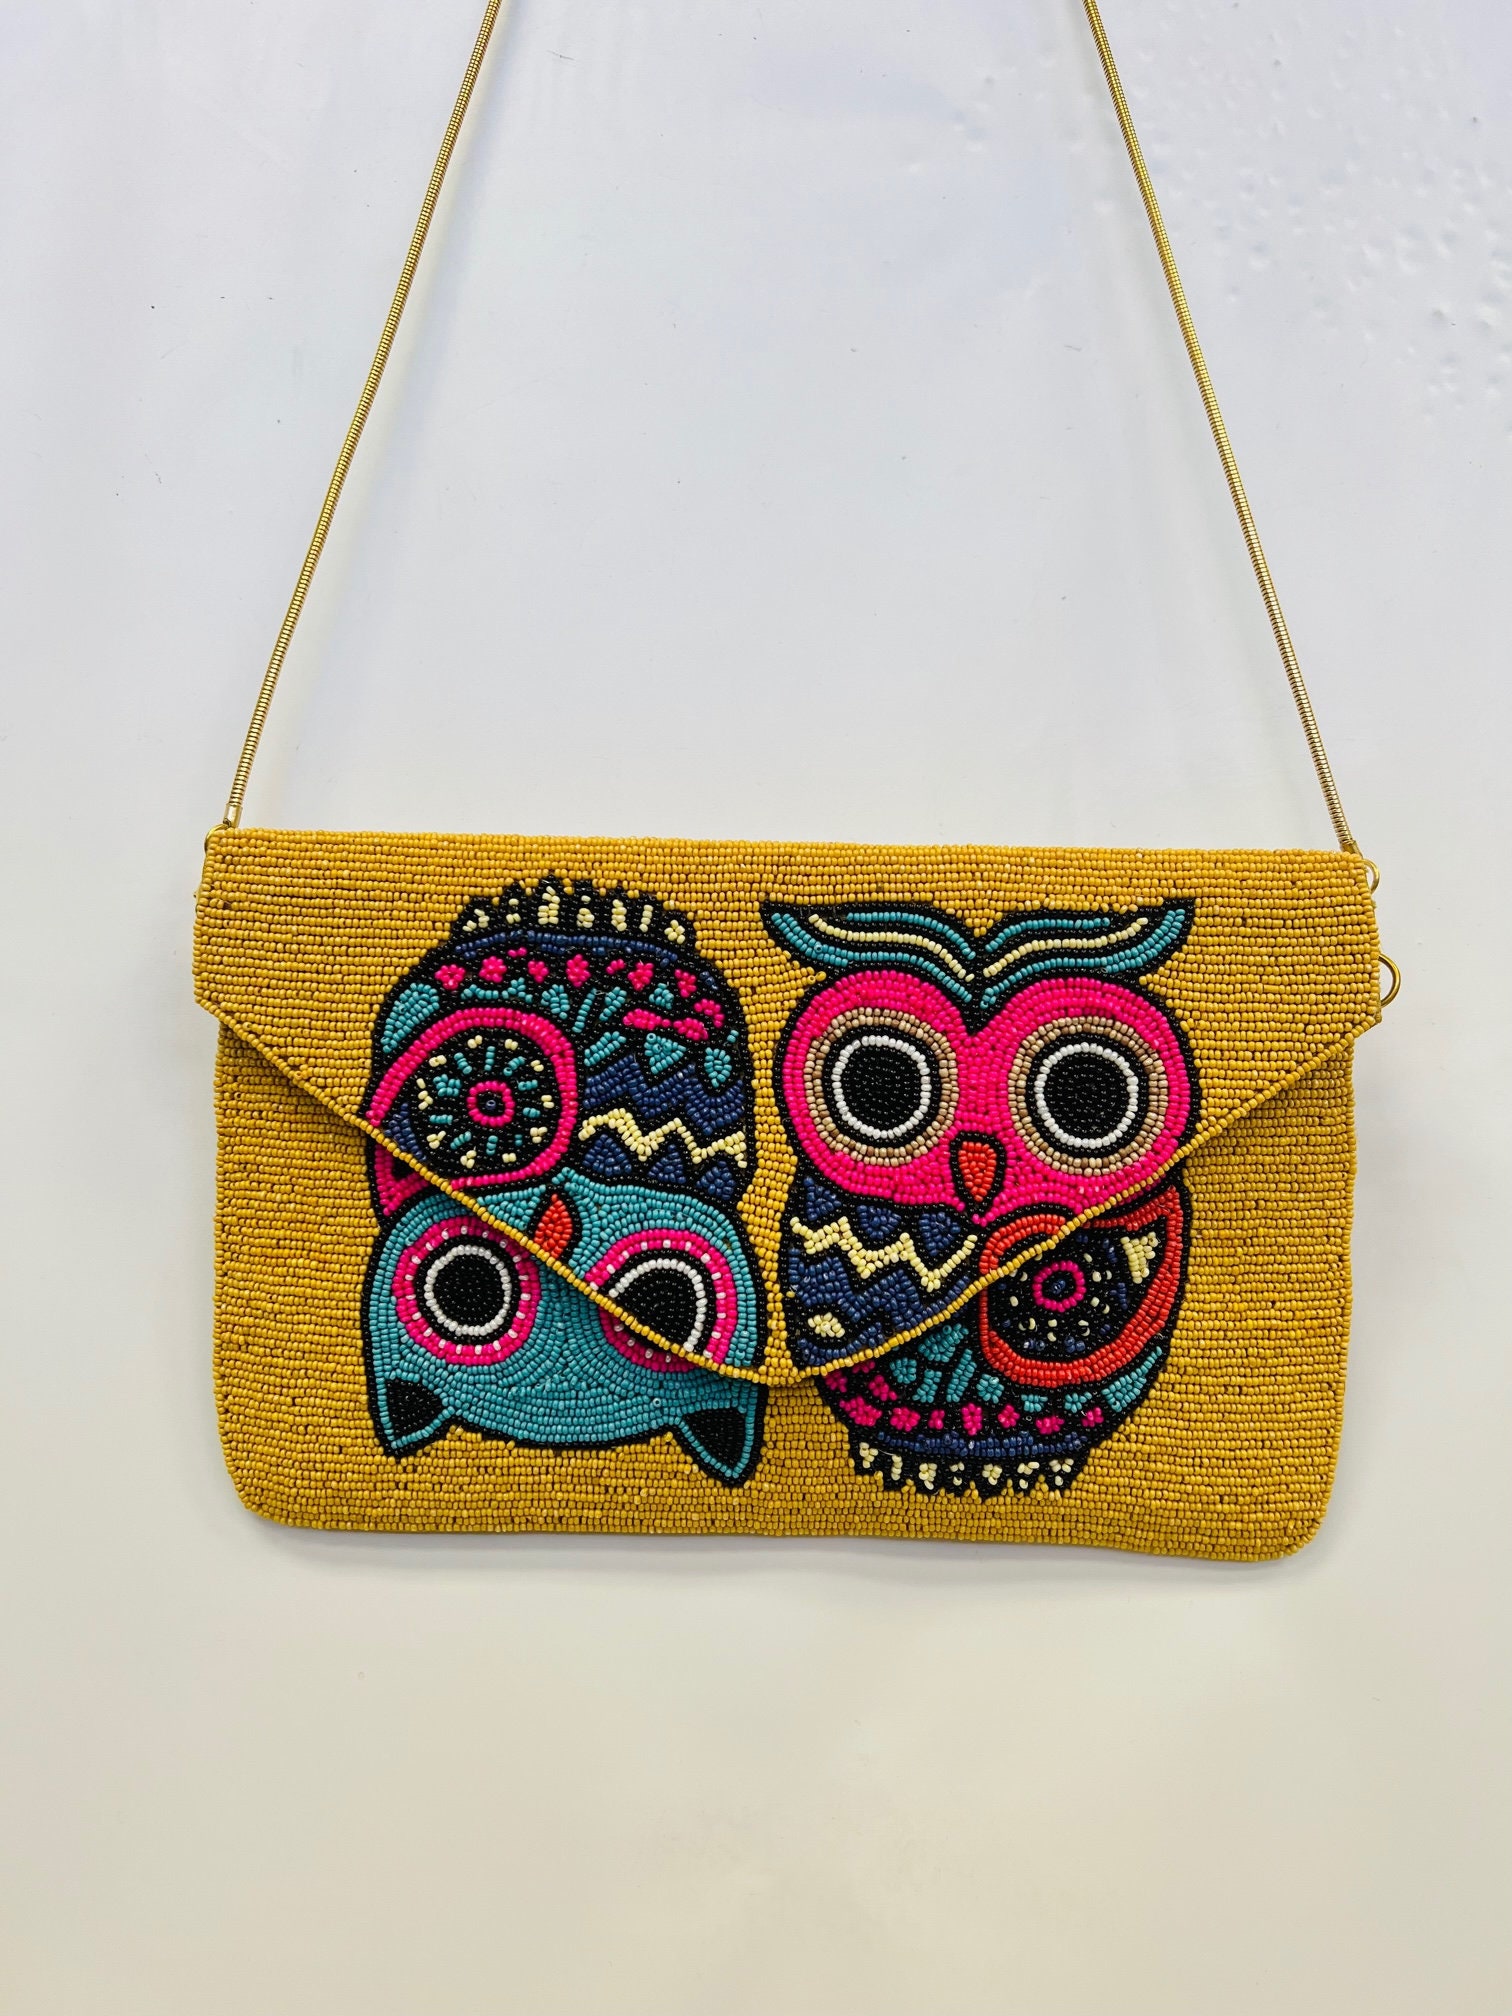 Cute magical orange owl clutch purse